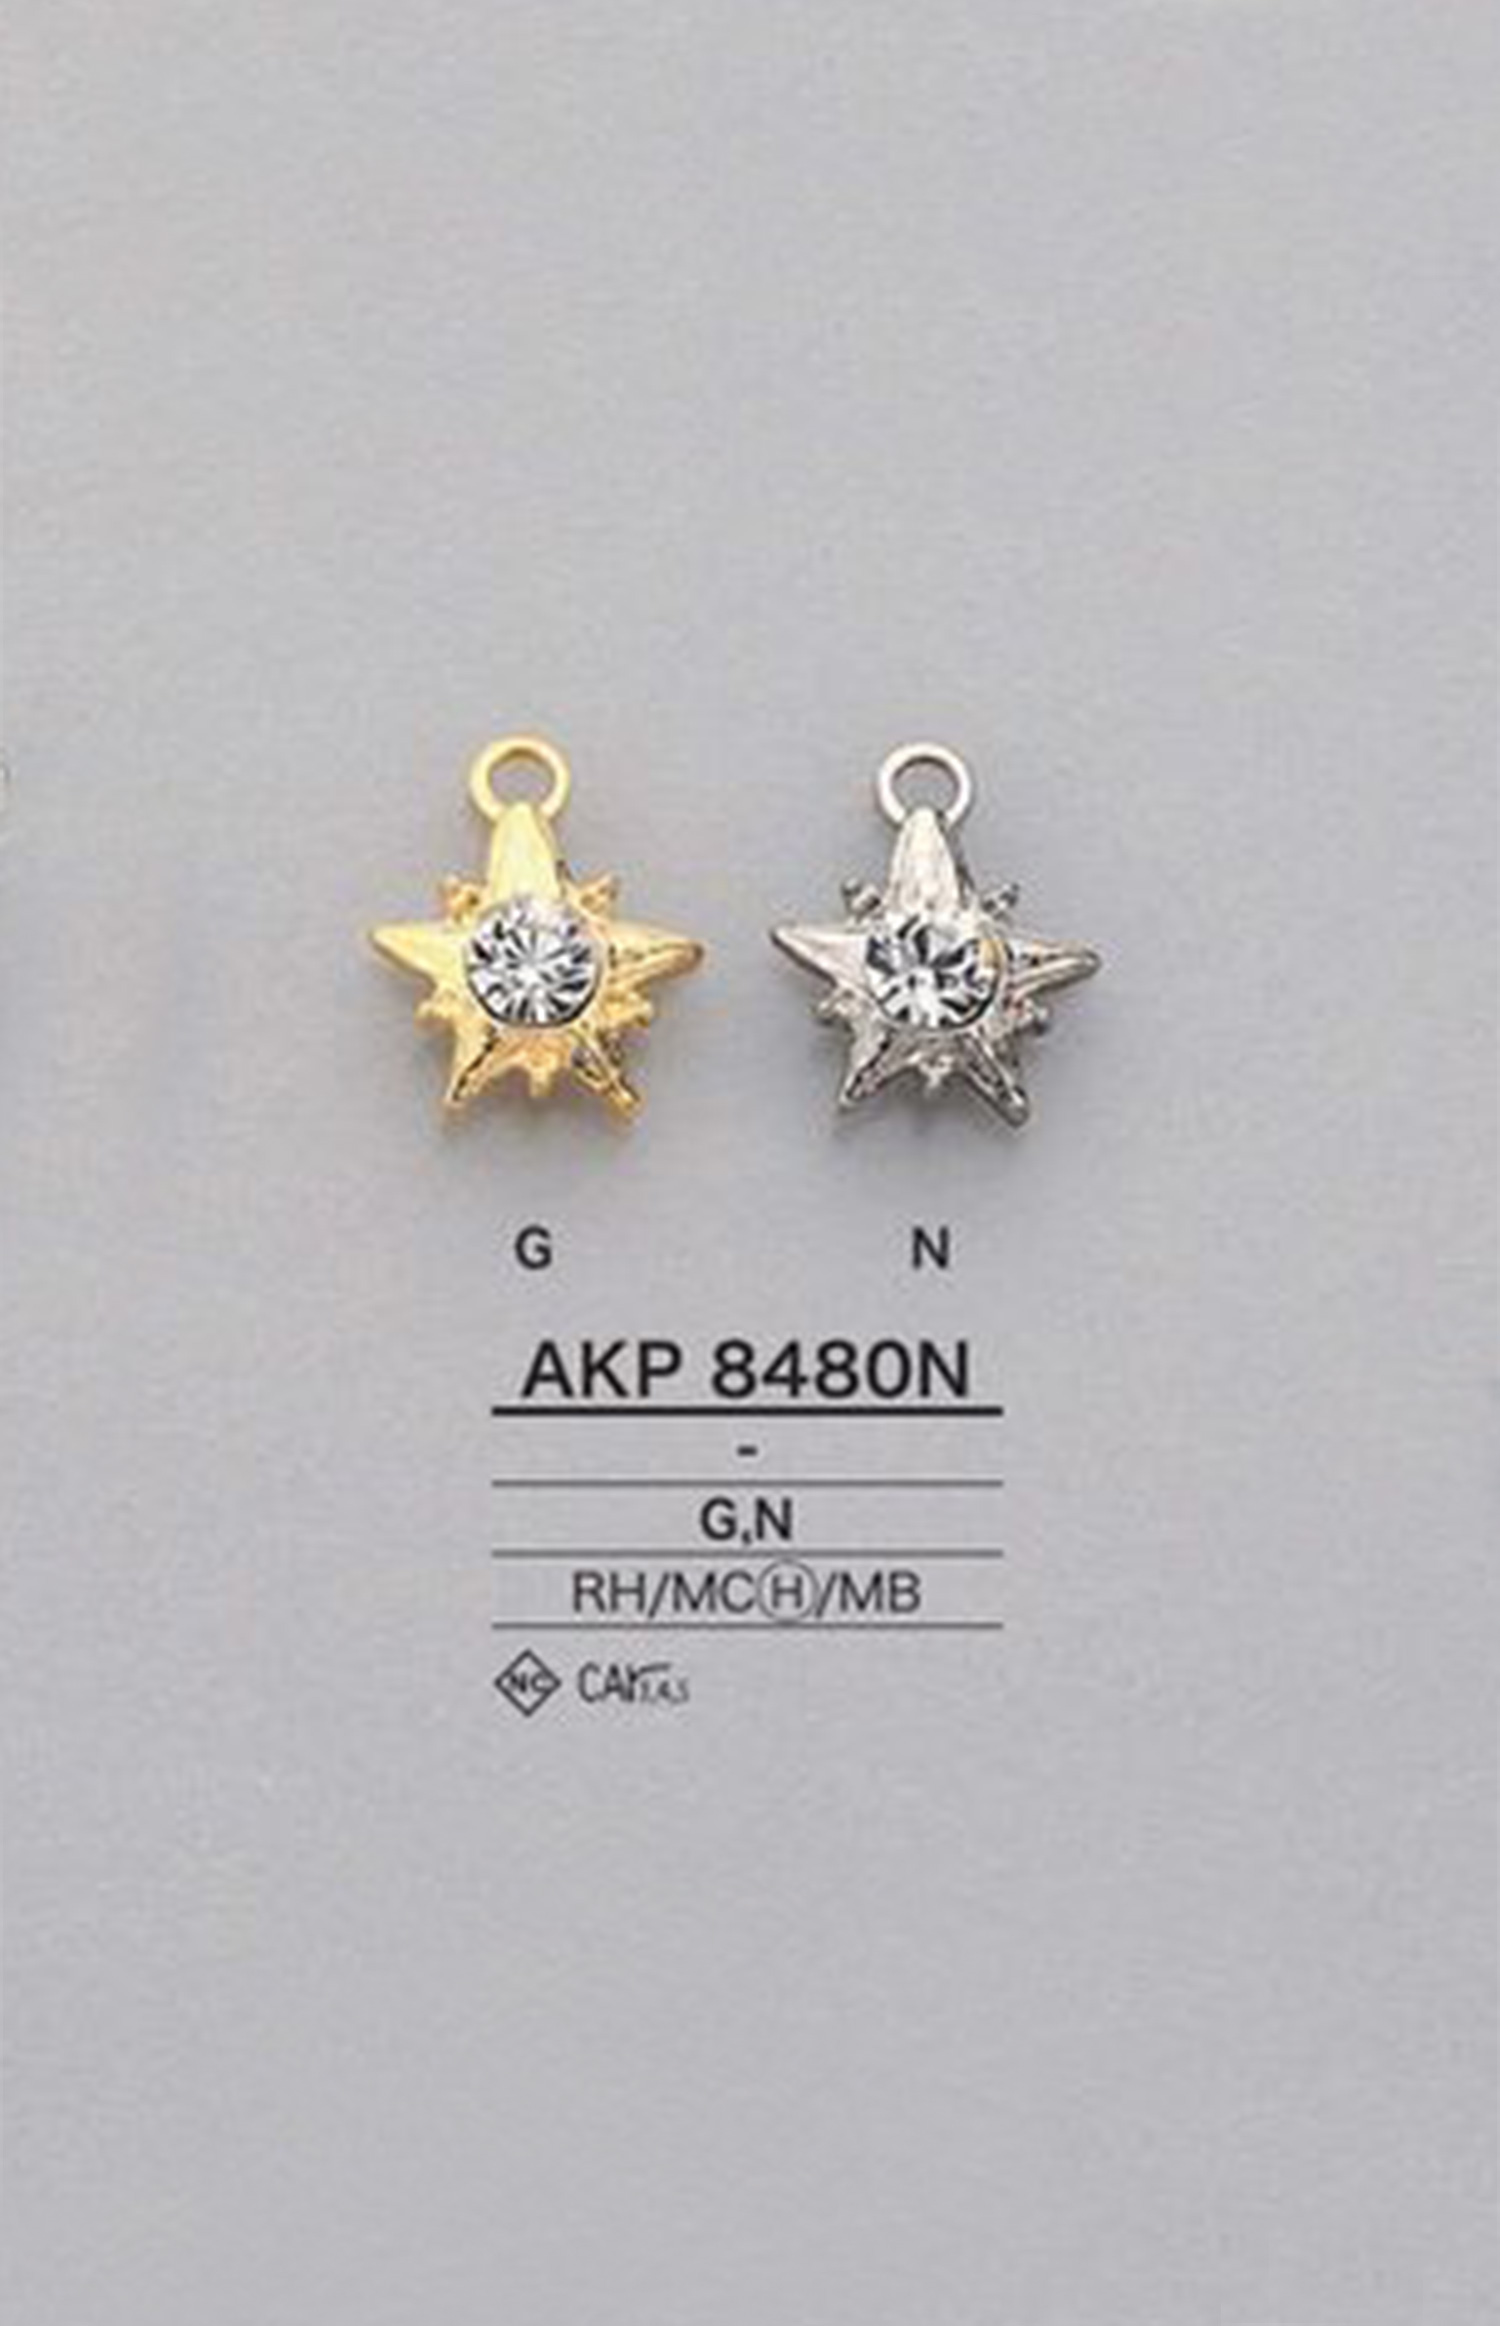 AKP8480N 水钻星形拉链（拉线器） 爱丽丝纽扣